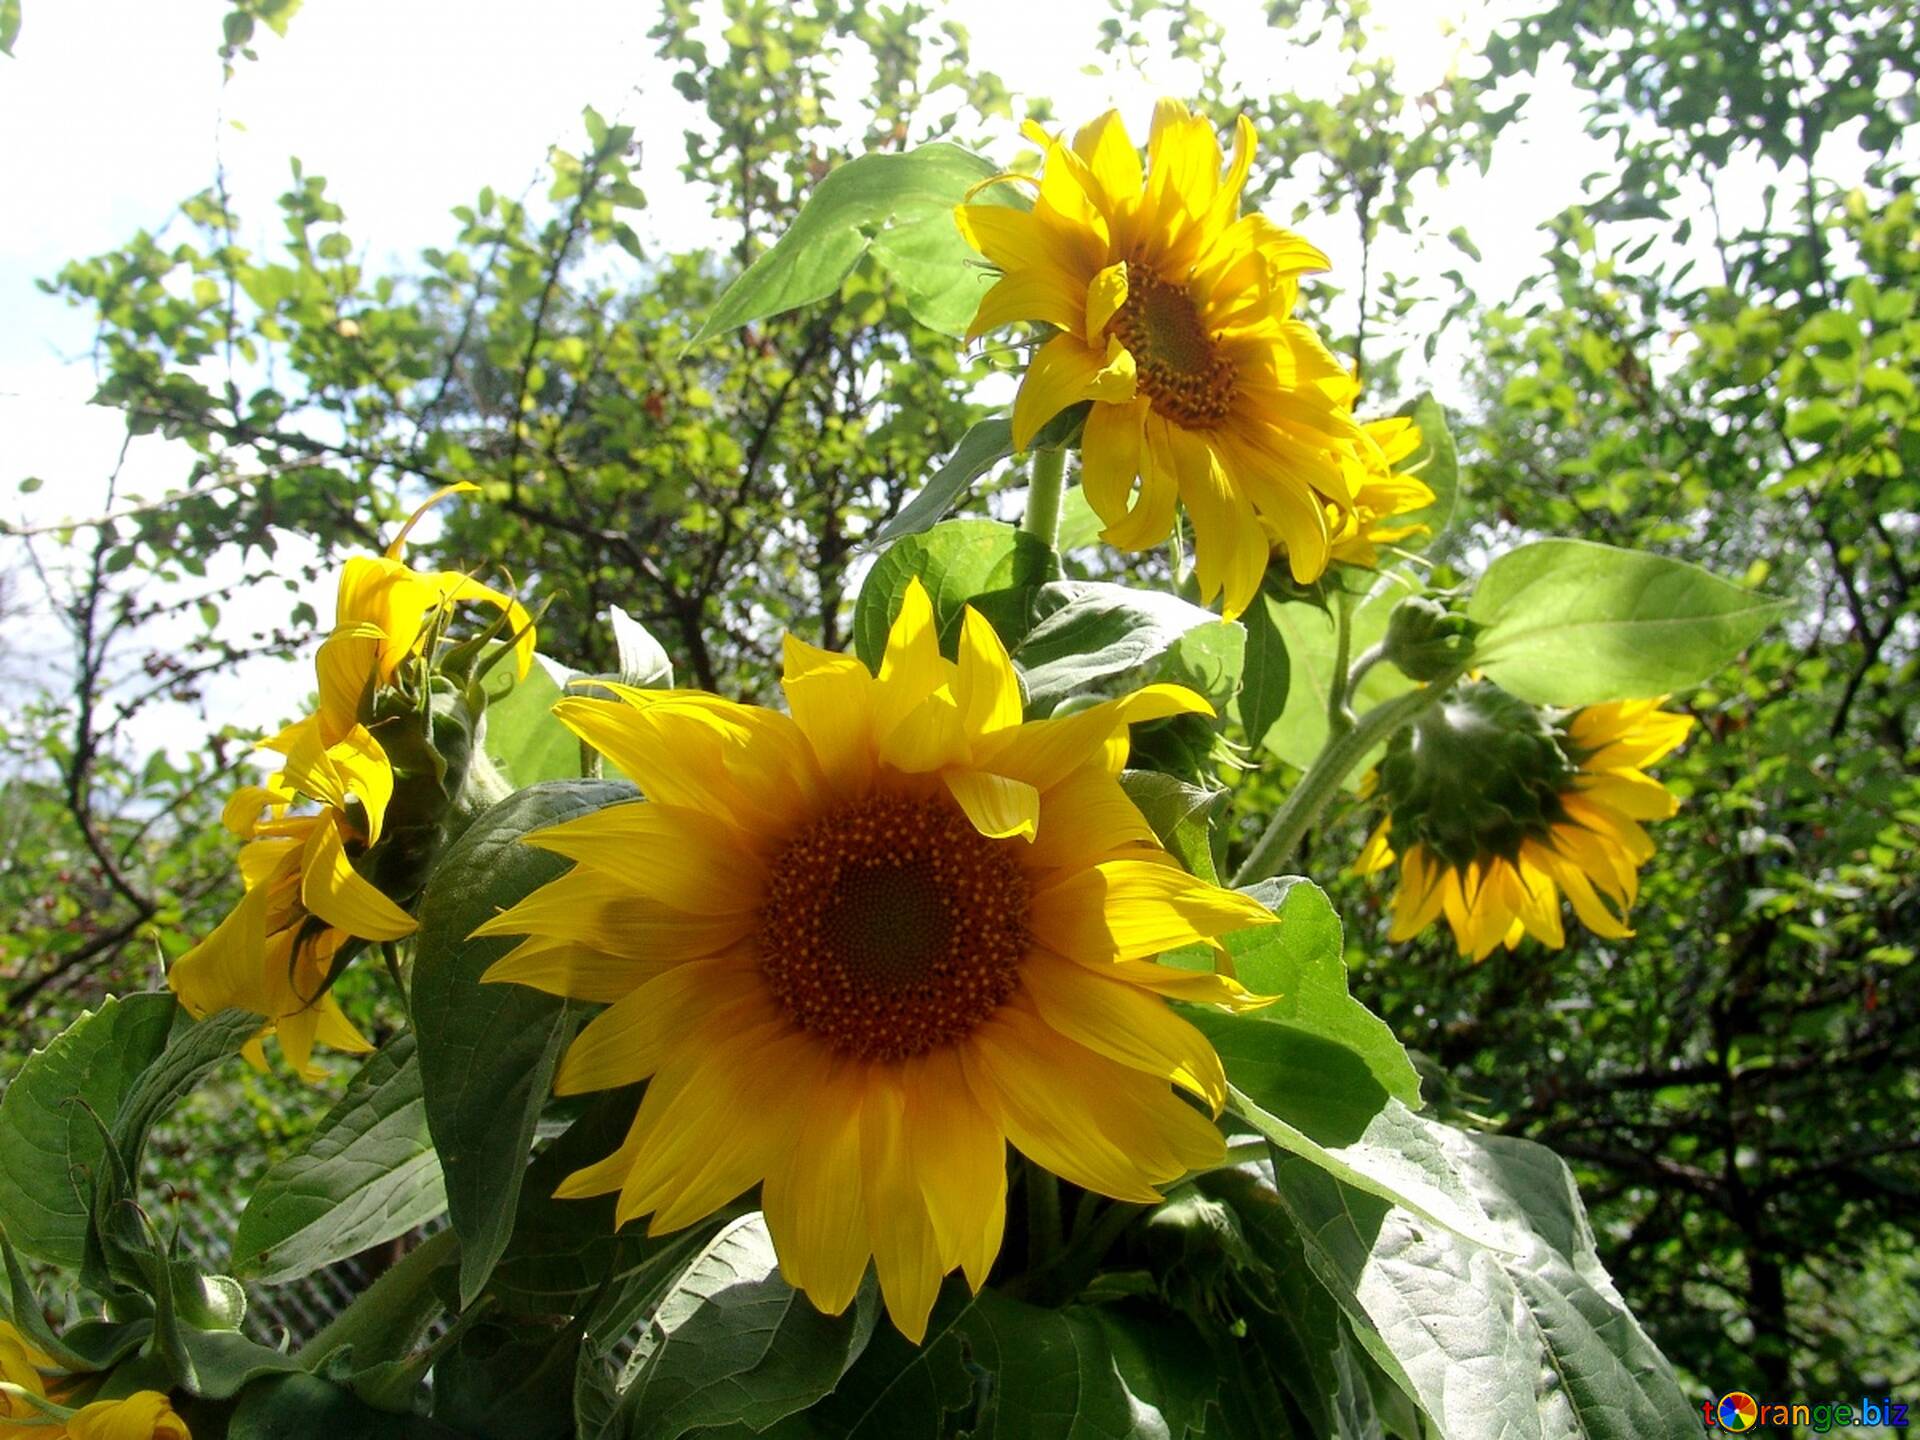 ヒマワリの花束 無料の写真 花束 の ヒマワリ 無料の写真 向日葵 2486 Torange Biz